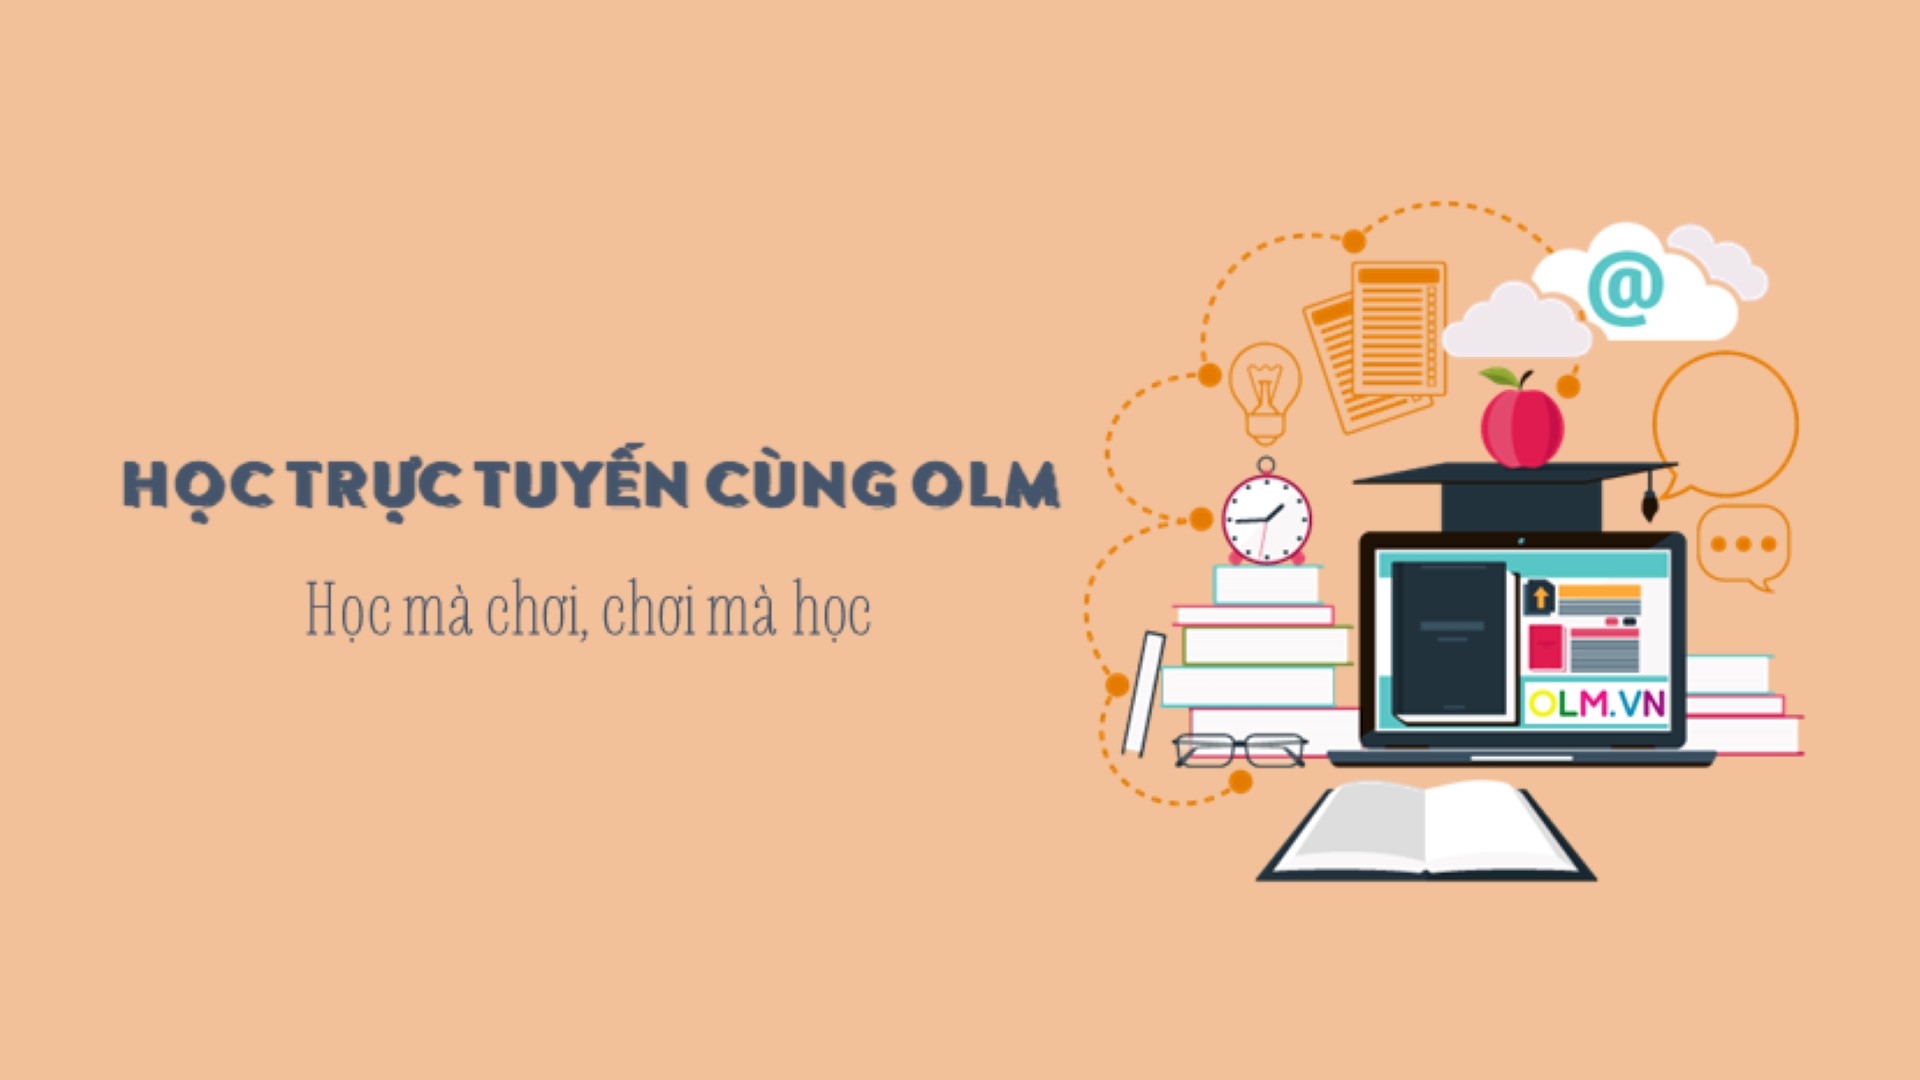 Có thể học online tiếng Anh lớp 2 trên website Toán học Olm.vn?